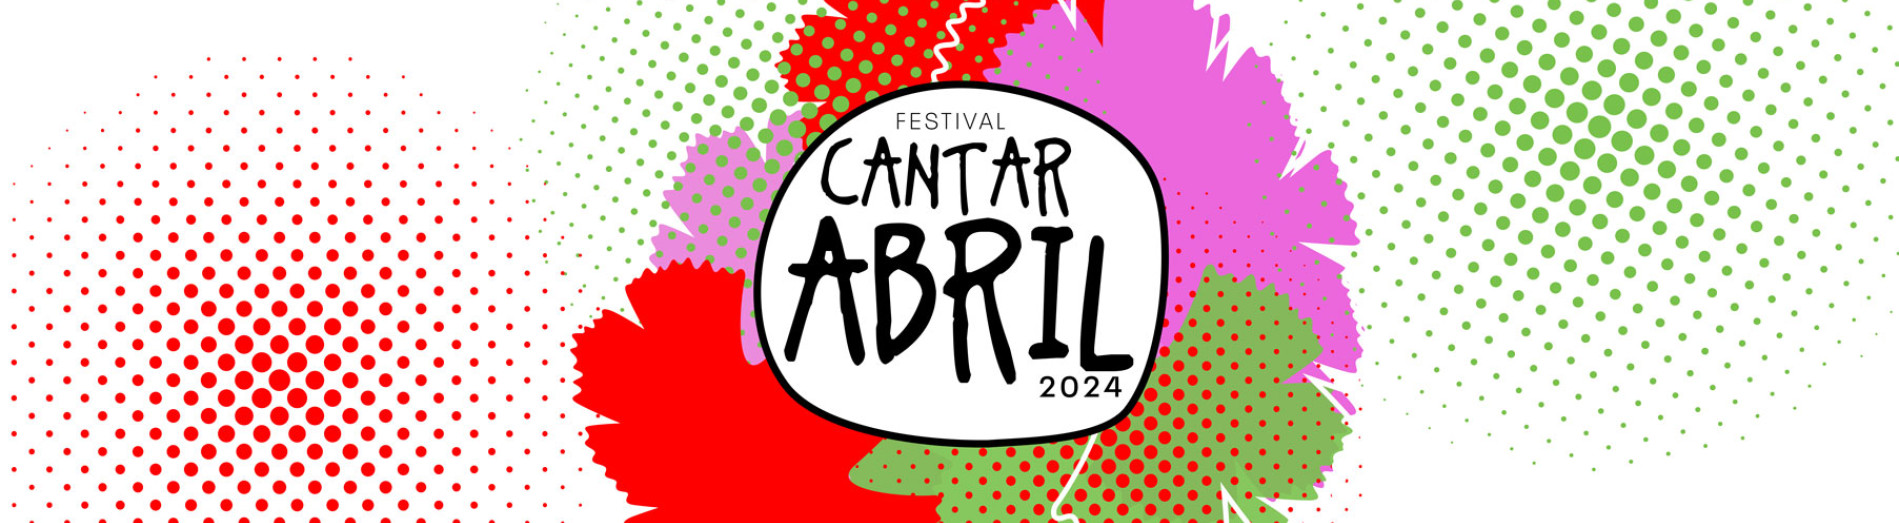 Festival Cantar Abril 2024